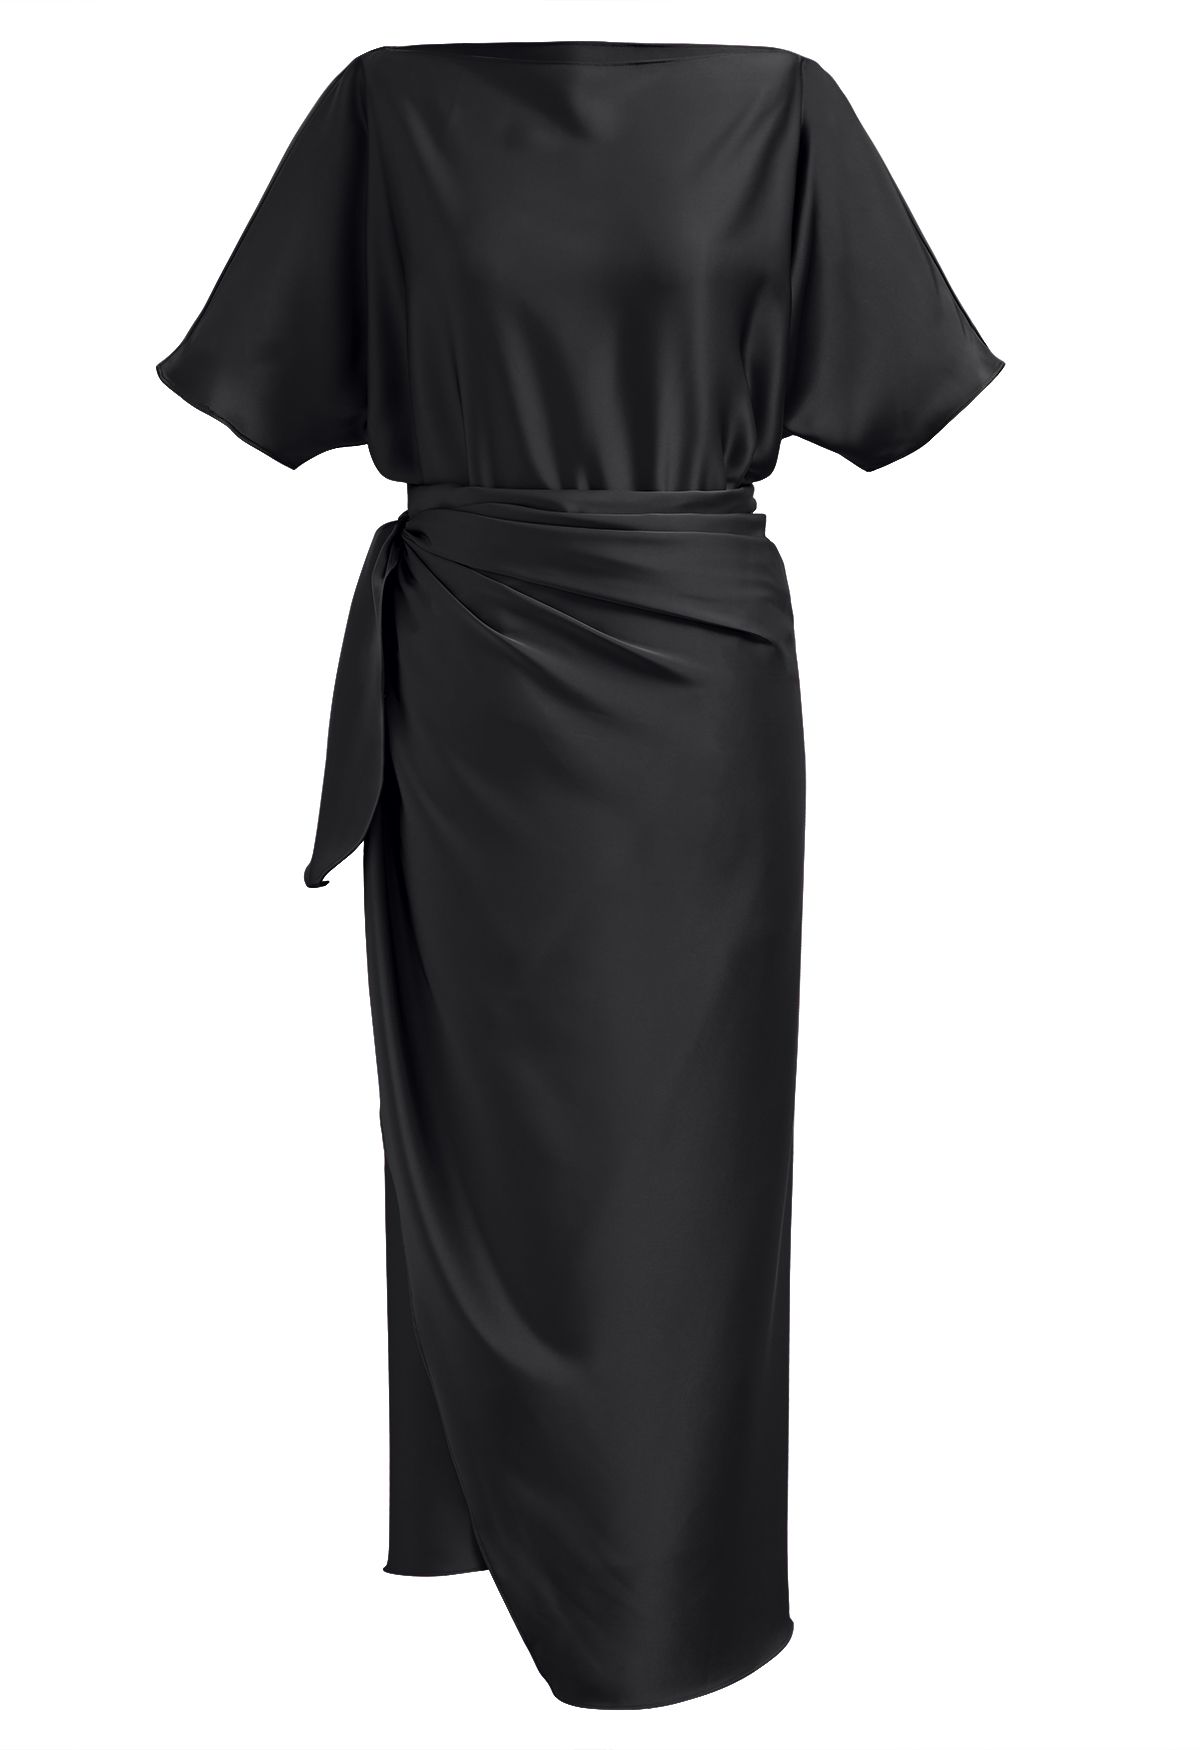 فستان طويل من الساتان بأكمام قصيرة وخصر ملفوف باللون الأسود